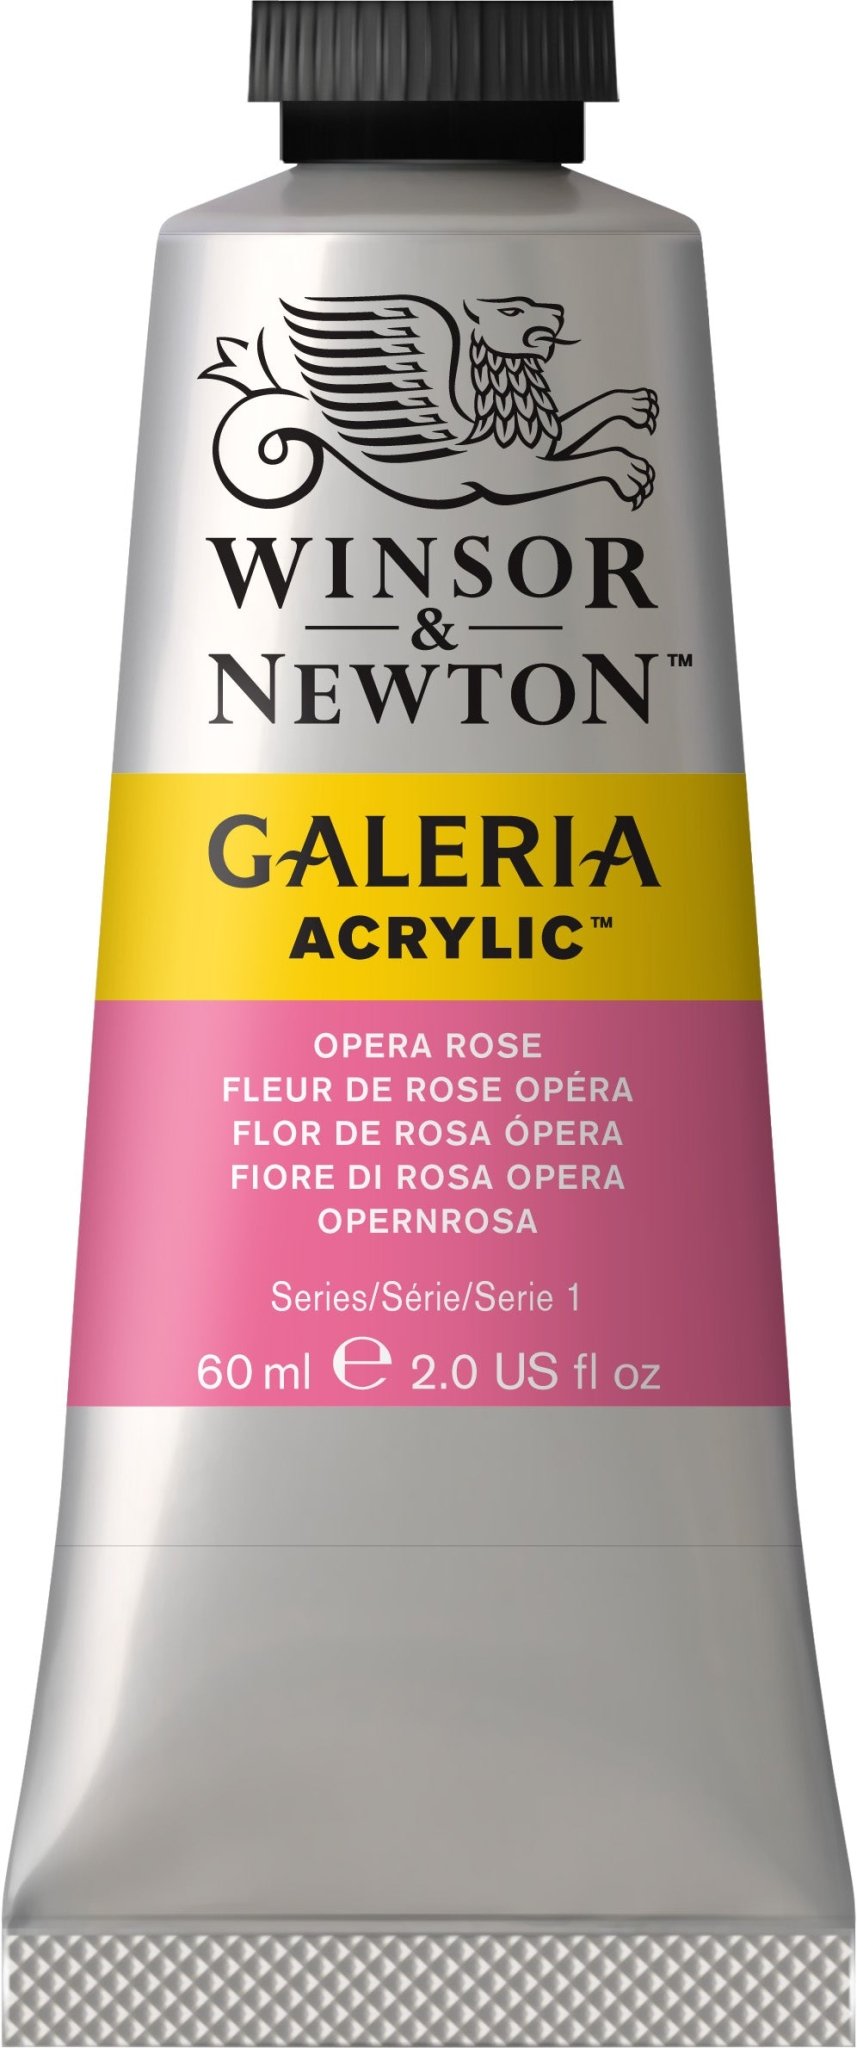 W & N Galeria Acrylic 60ml Opera Rose - theartshop.com.au